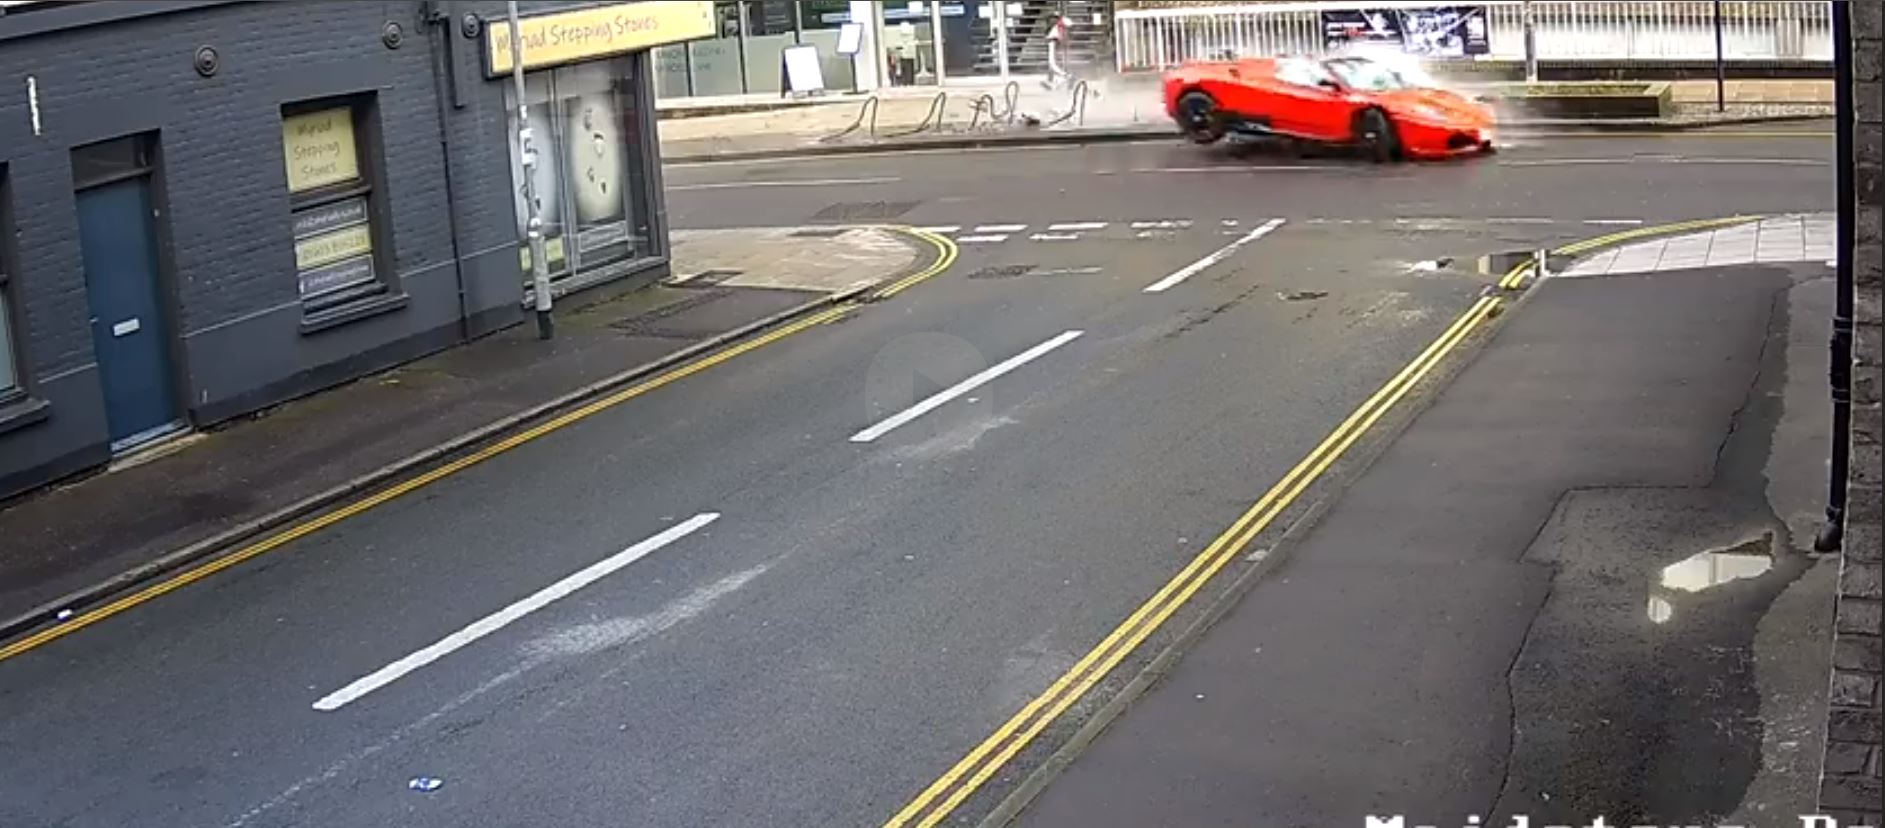 Sein Ferrari geriet außer Kontrolle und prallte gegen einen Fahrradständer